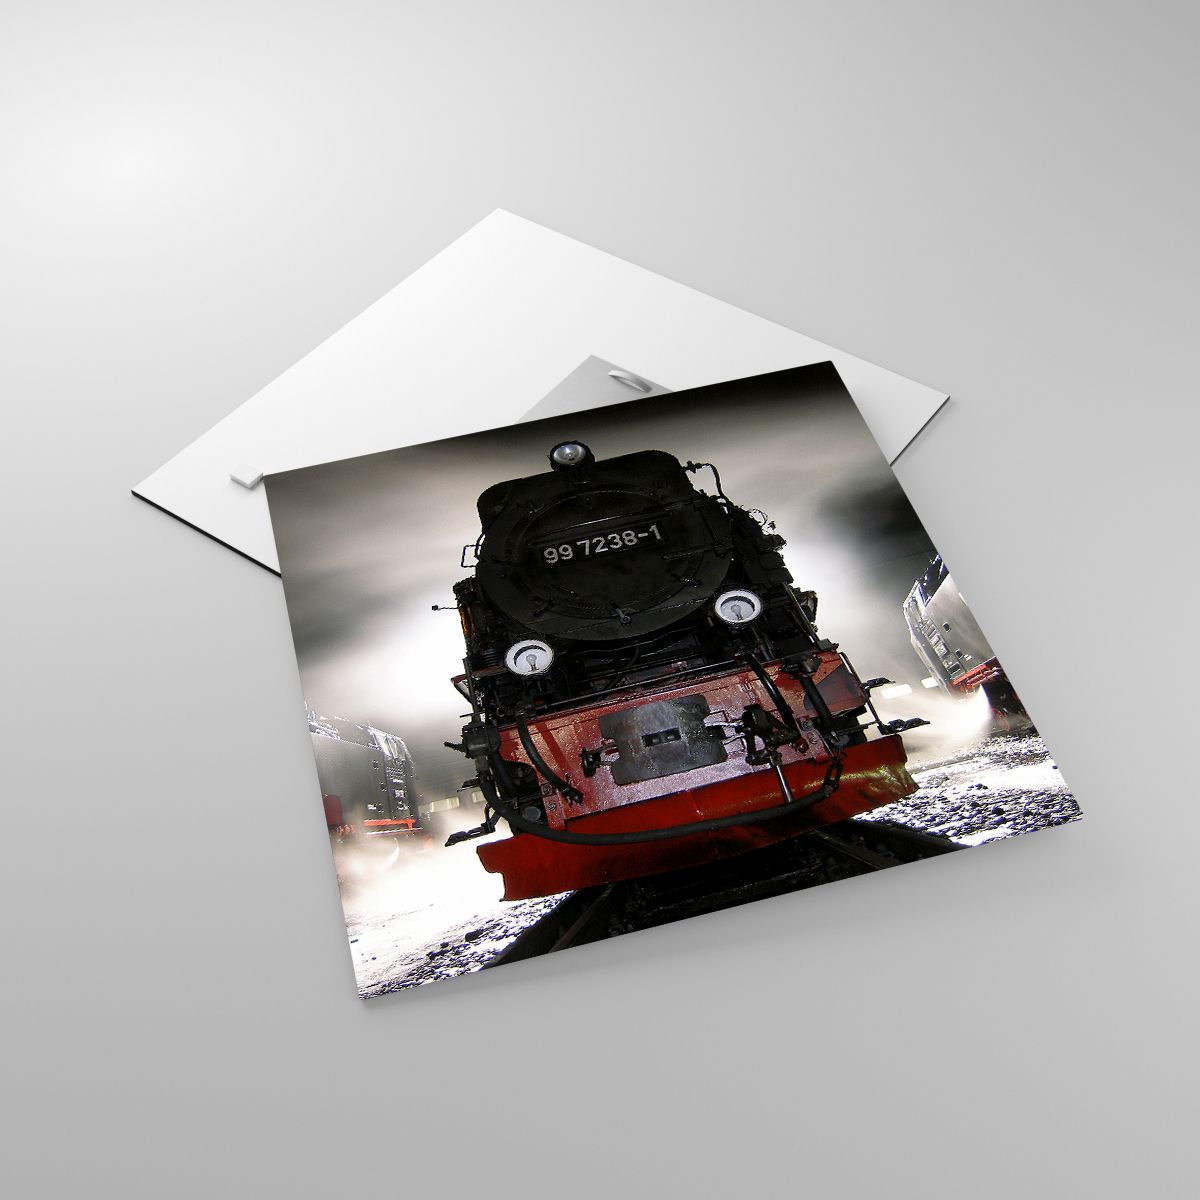 Glasbild Dampflokomotive, Glasbild Bahnhof, Glasbild Automobil, Glasbild Thora, Glasbild Abstellgleis